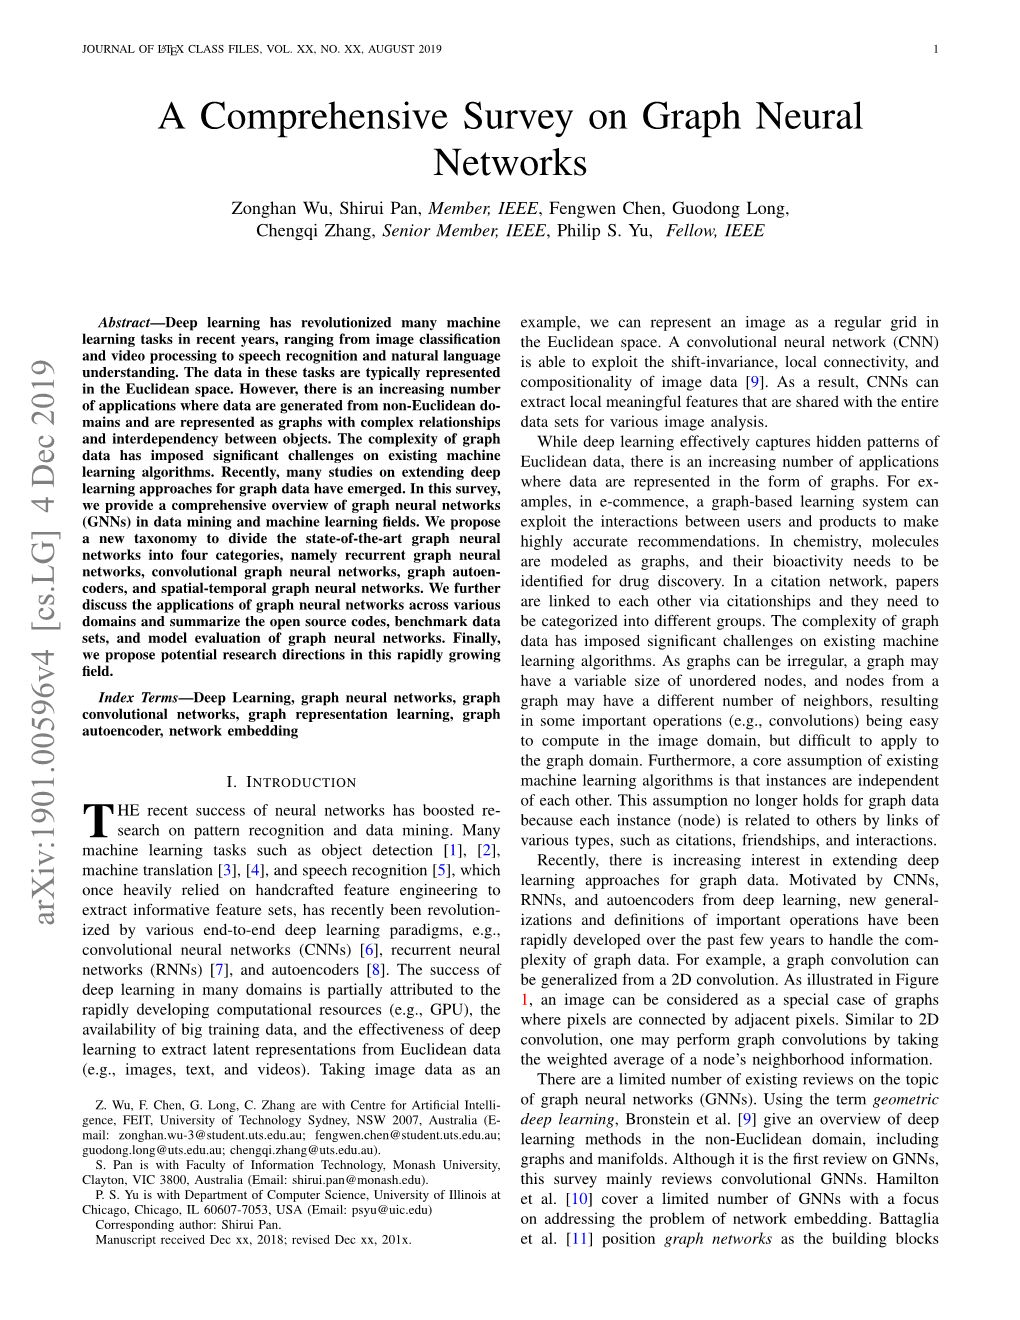 A Comprehensive Survey on Graph Neural Networks Zonghan Wu, Shirui Pan, Member, IEEE, Fengwen Chen, Guodong Long, Chengqi Zhang, Senior Member, IEEE, Philip S